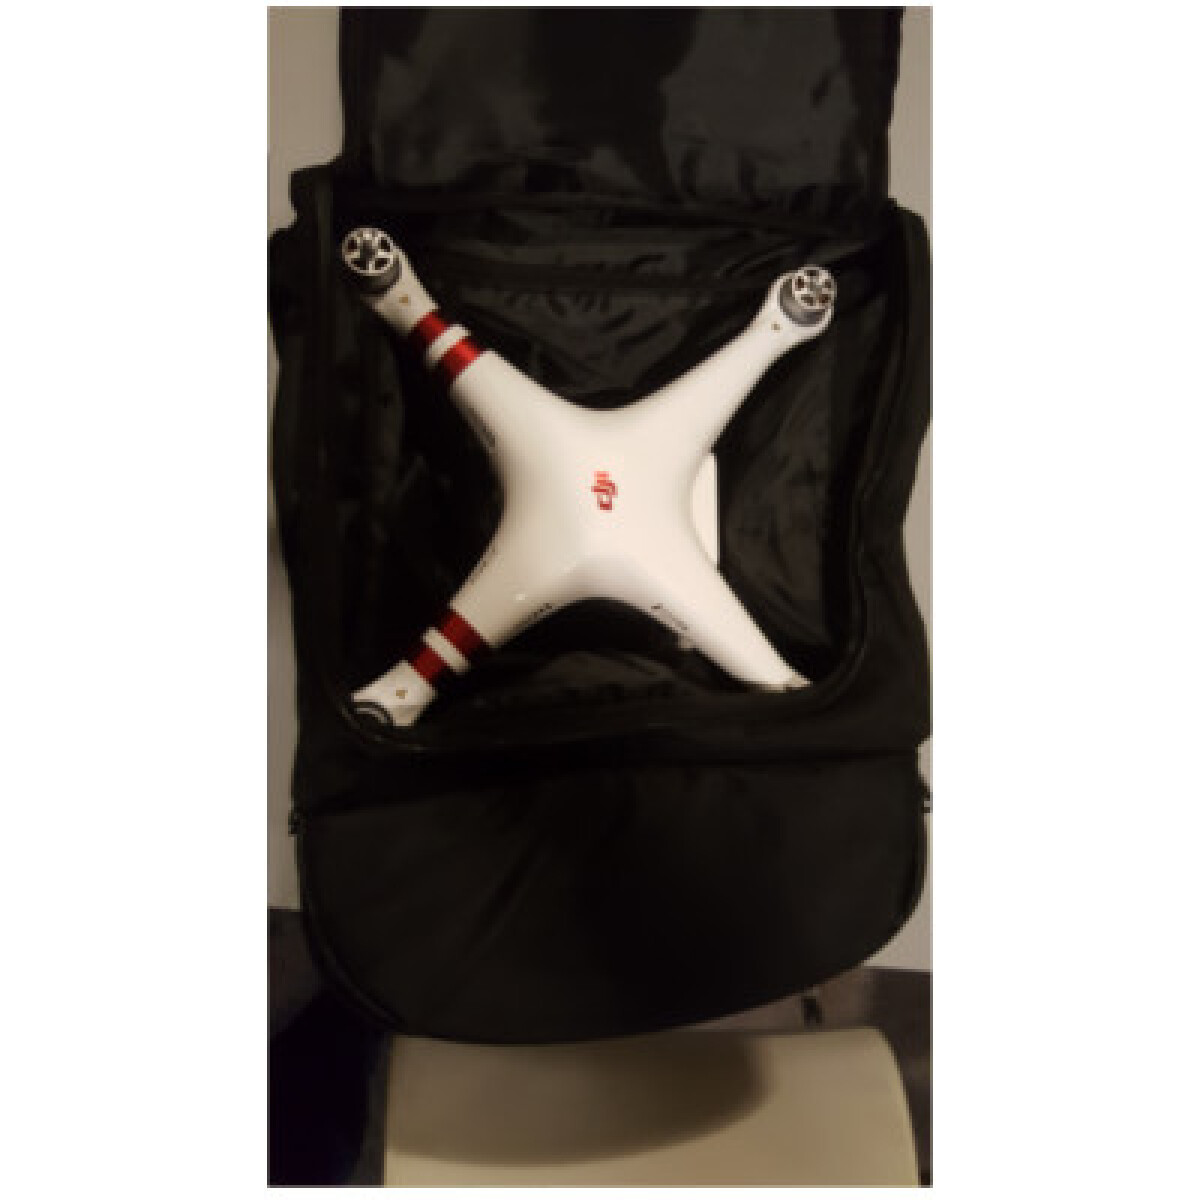 Mochila Porta Drone - 12" - Resitente al Agua. para Drones, Compatible con Dji Phantom 2, 3 y 4 - 001 